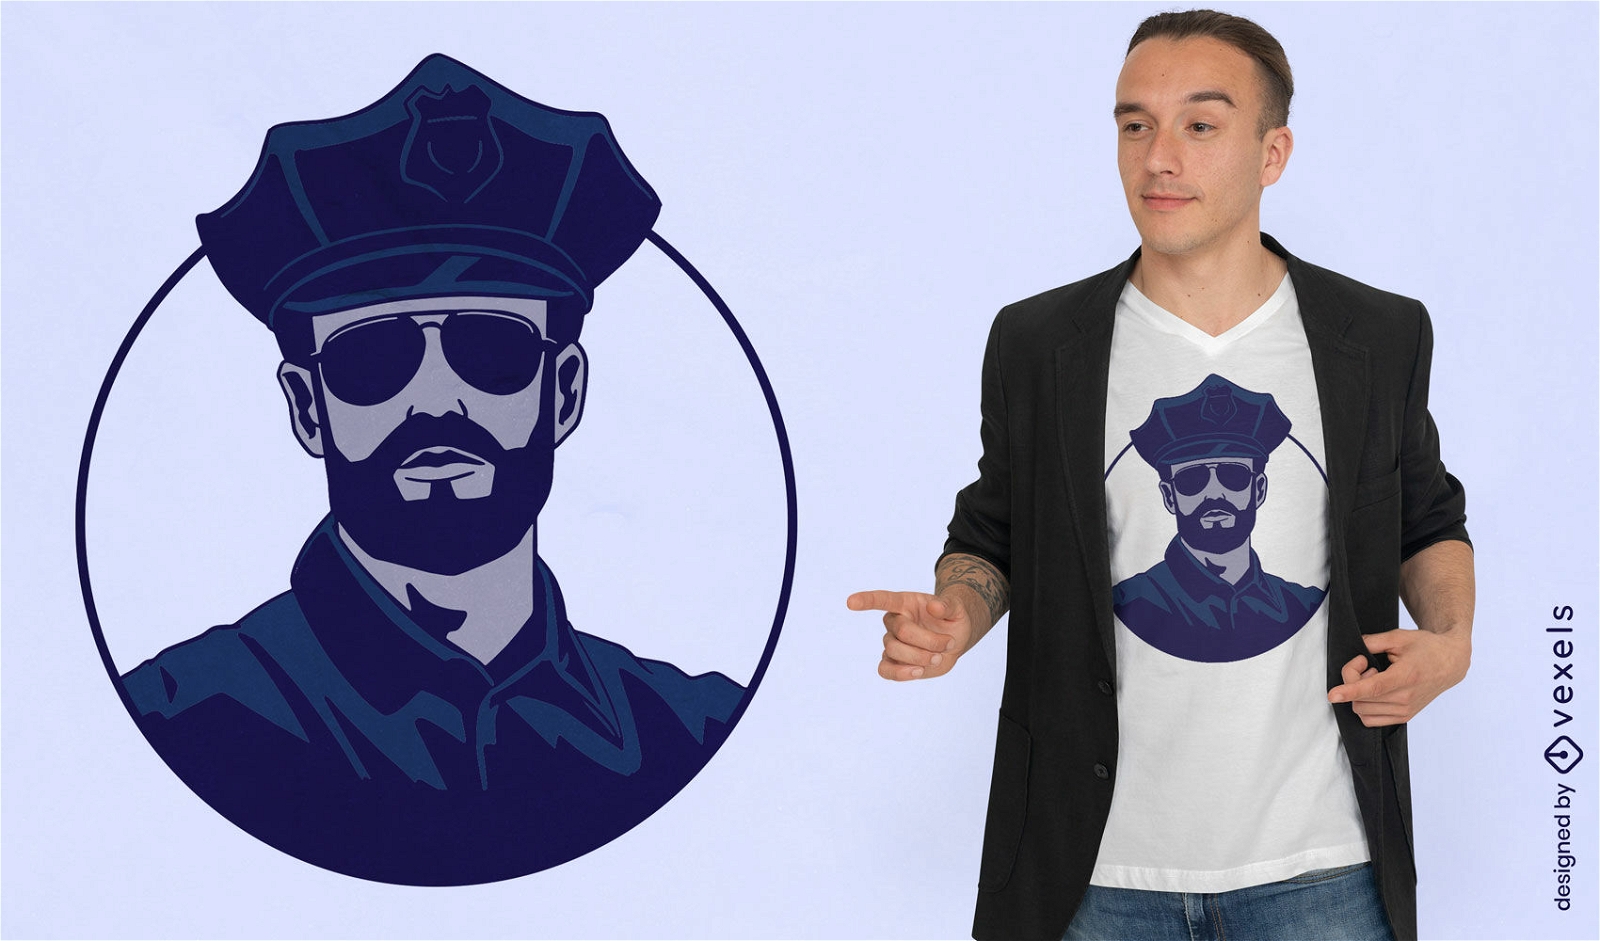 Cooles Polizist T-Shirt Design